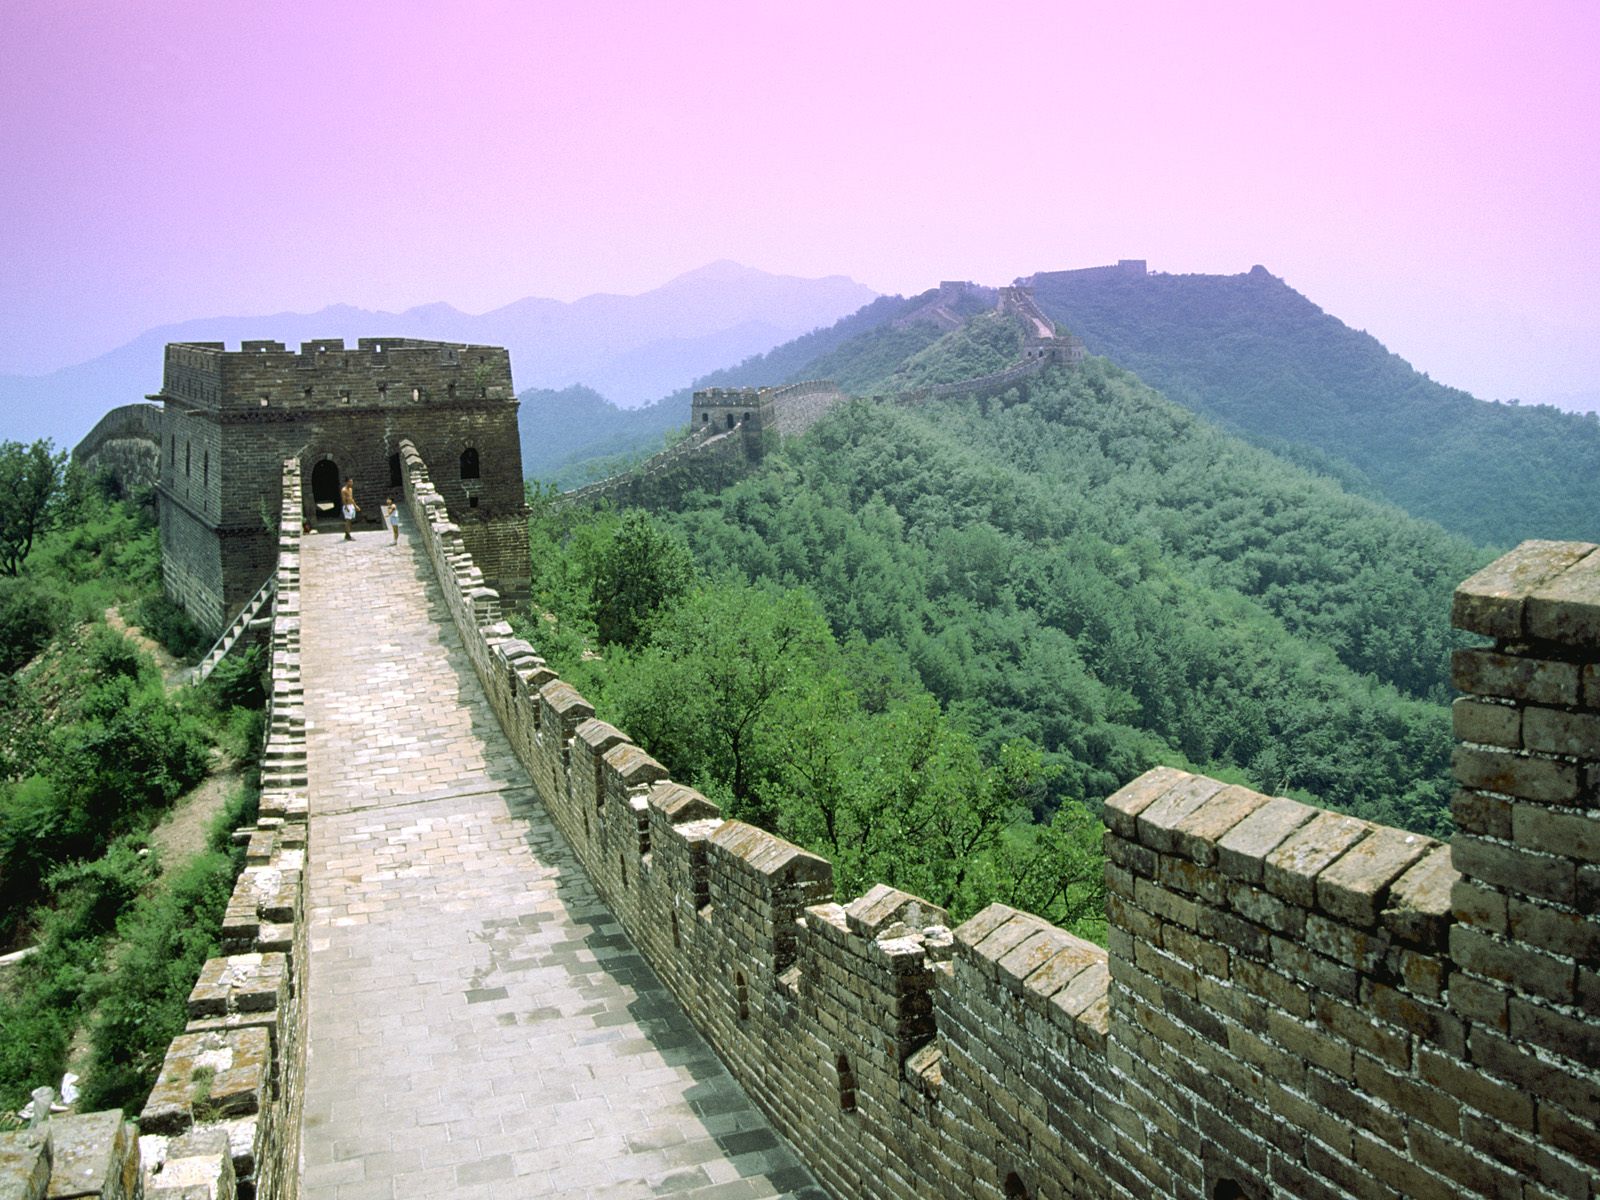 carta da parati della grande muraglia cinese,parete,stazione di collina,sito archeologico,paesaggio naturale,fortificazione